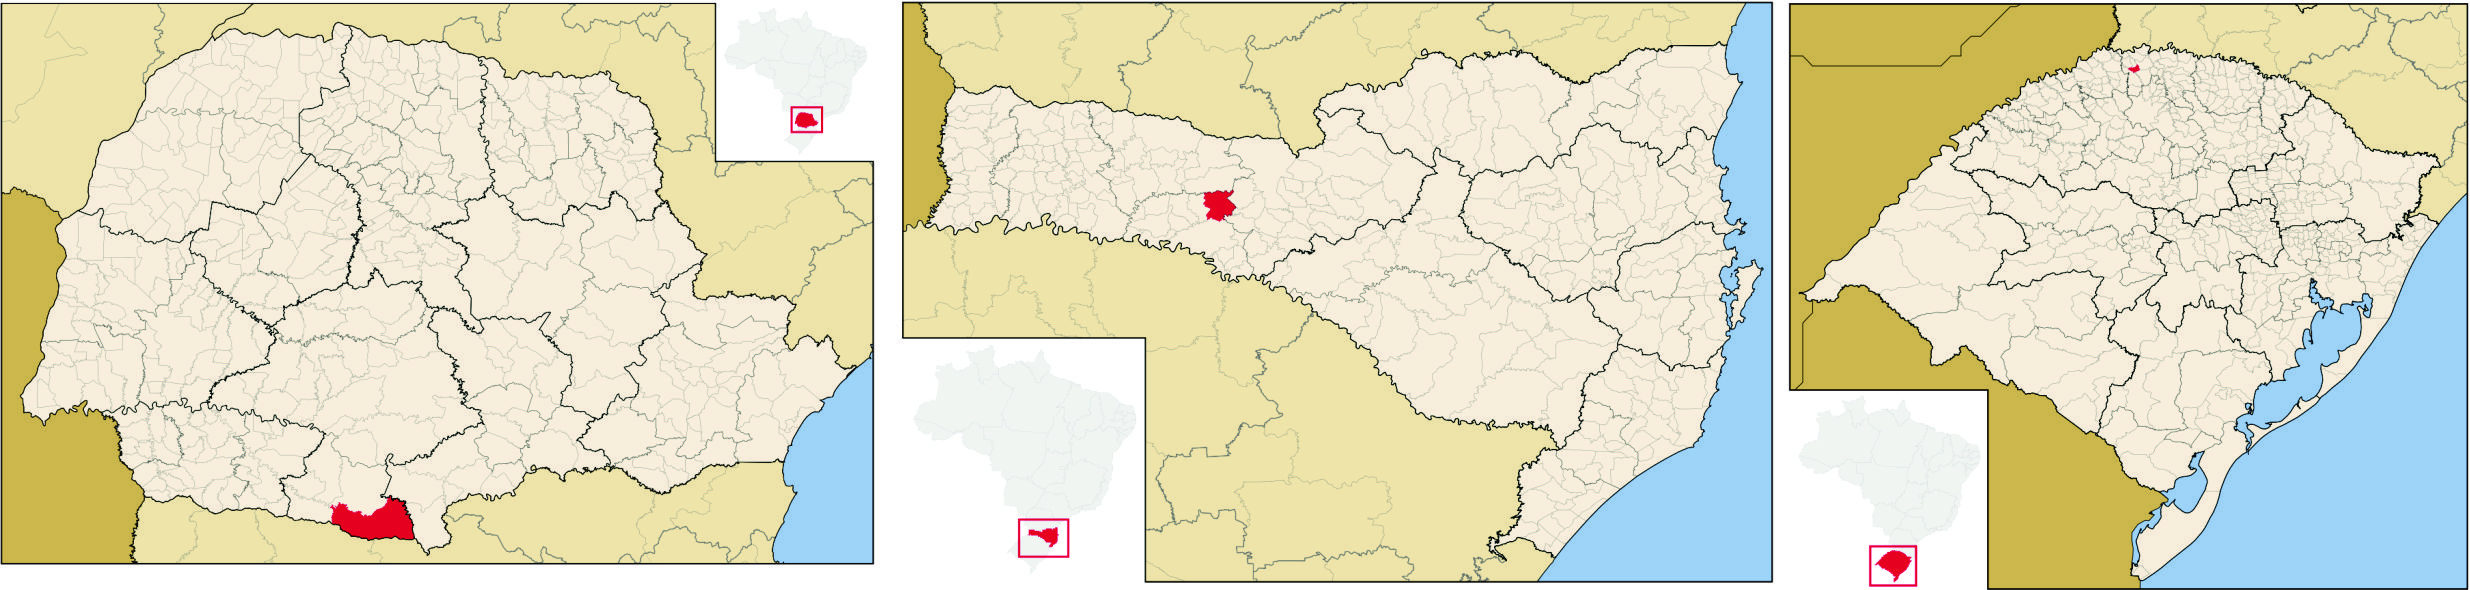 Figura 2 – Localização de Palmas, Irani e Taquaruçu, respectivamente. Fonte: Abreu, 2006  reelaborado pelas autoras